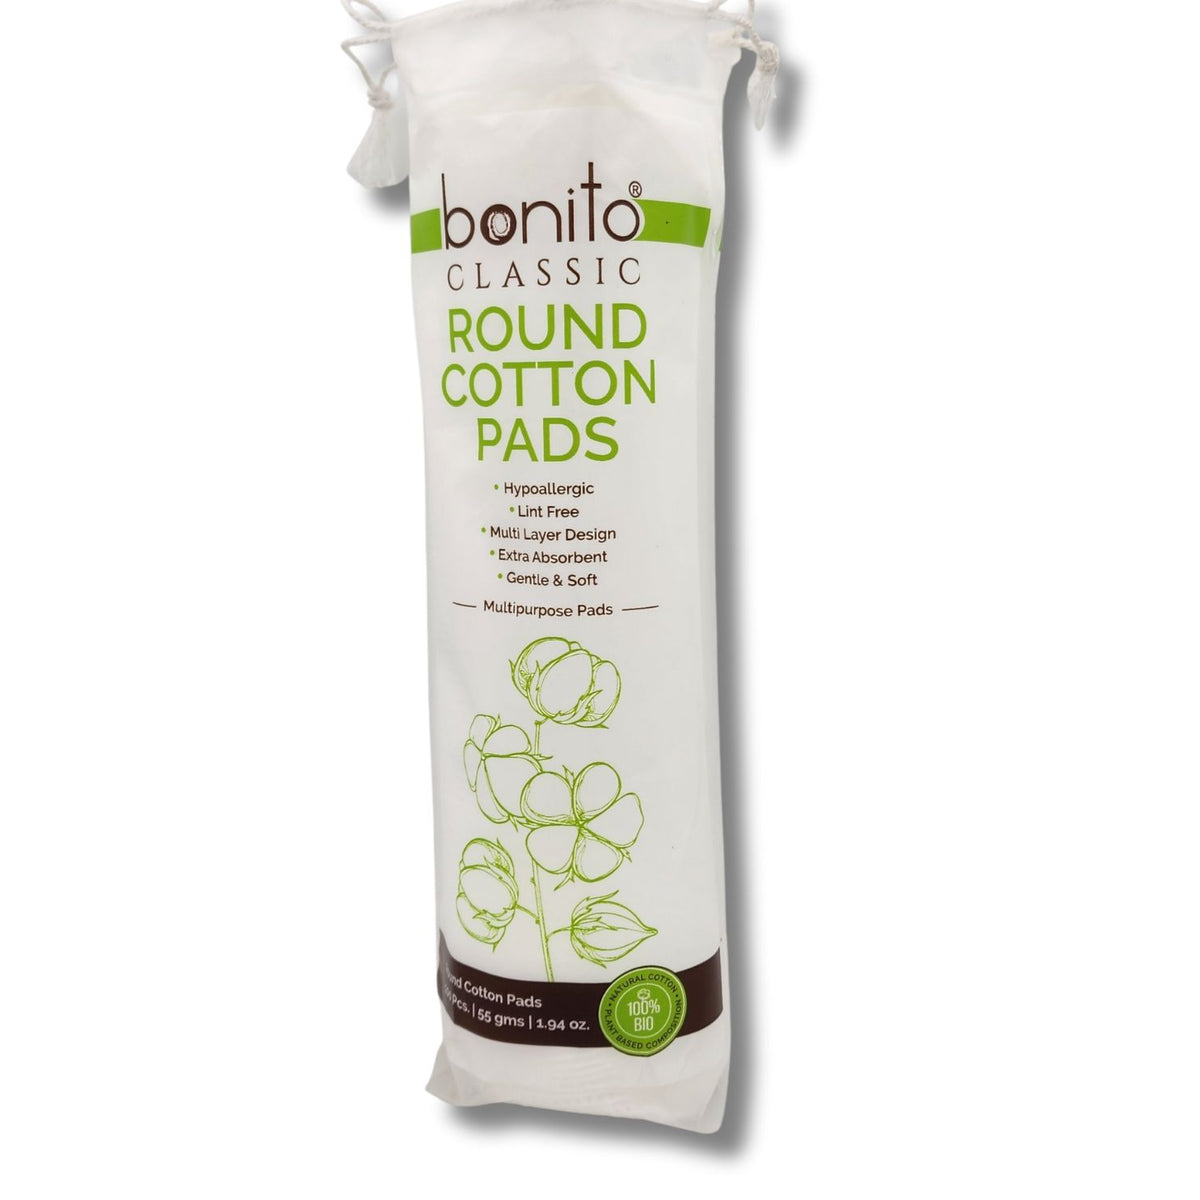 bonito classic Round cotton pads 100pcs. (55 gm) Bonito Classic